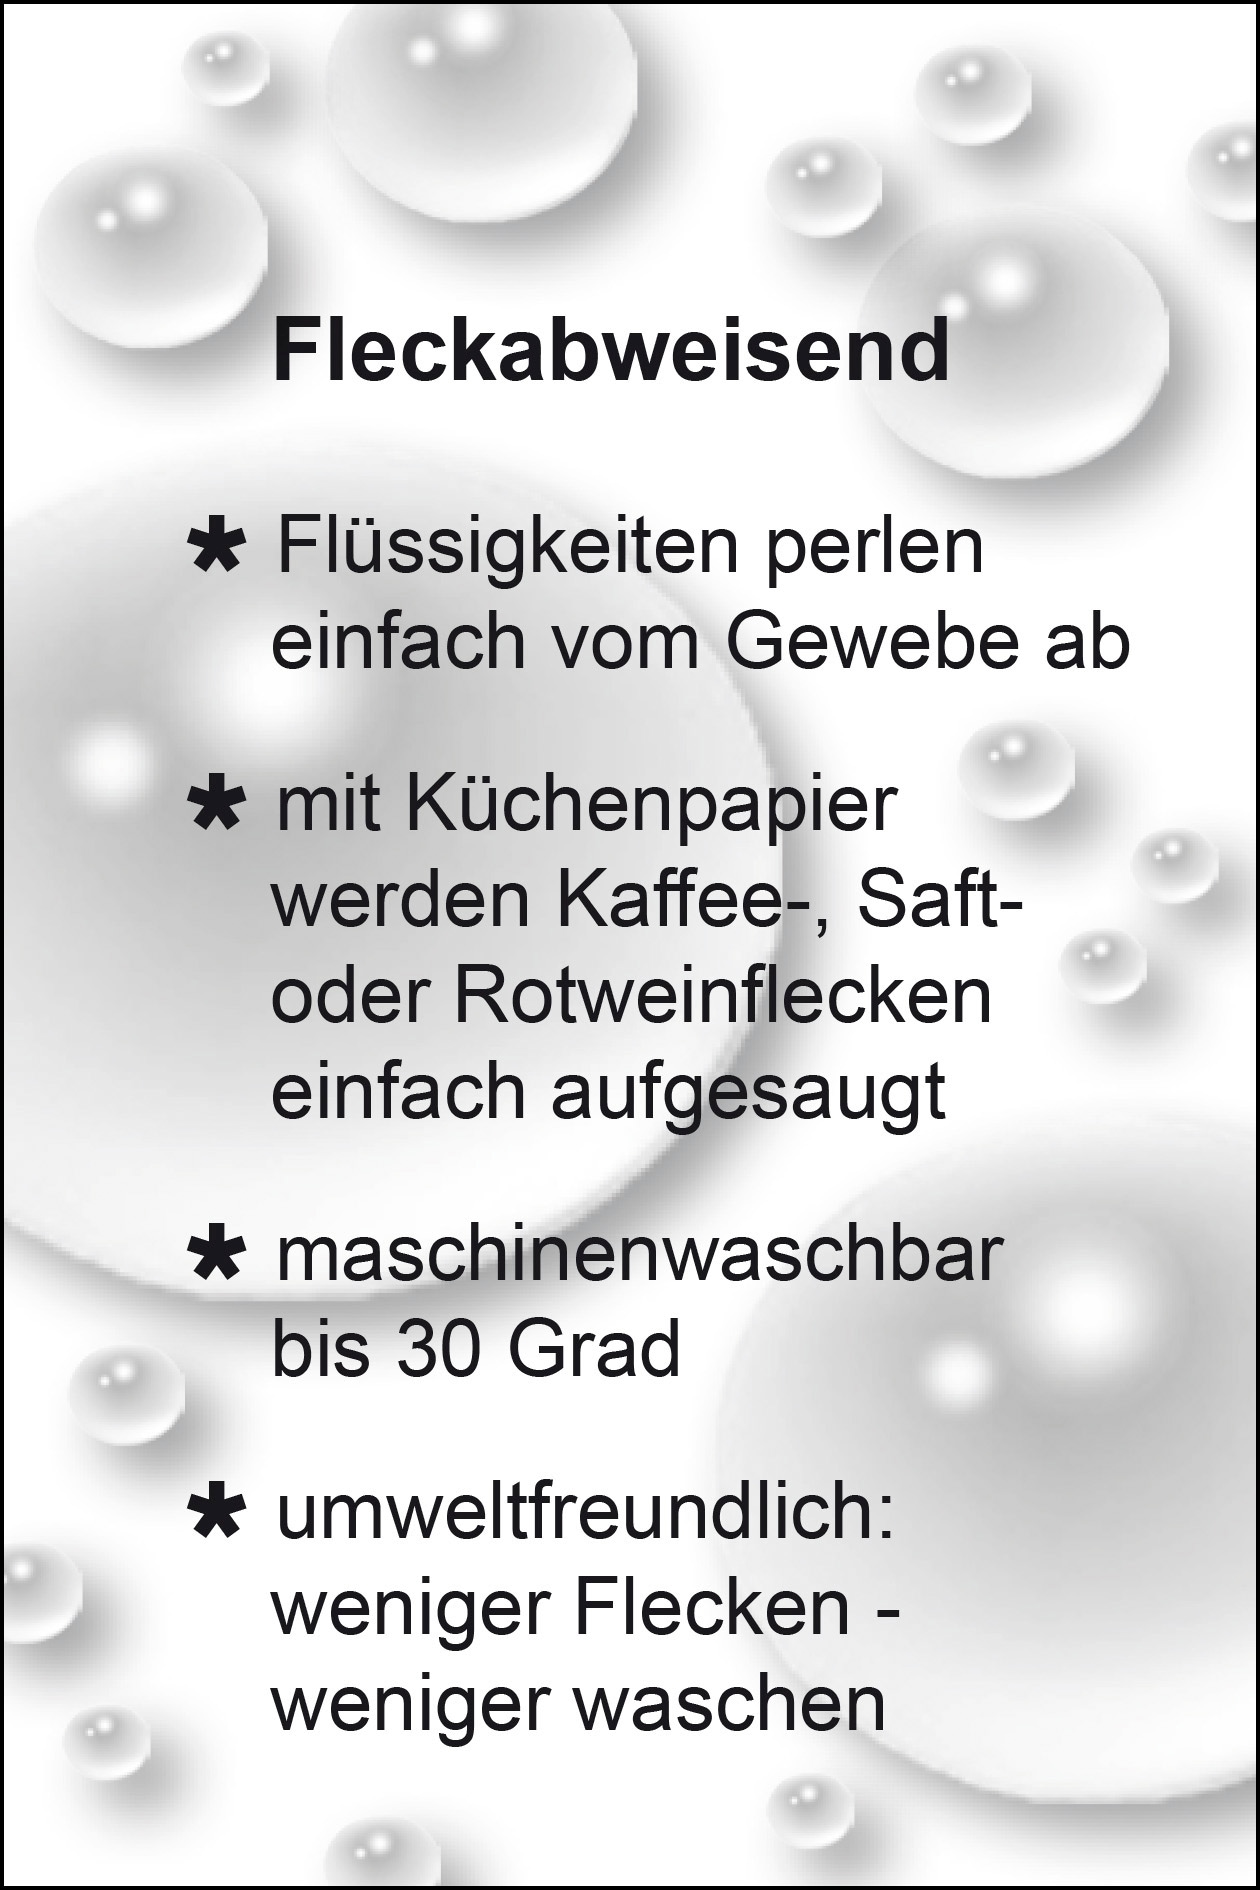 Lifestyle Tischdecke pflegeleicht, g/m² Delindo (1 »WIEN«, Fleckabweisend, St.), 180